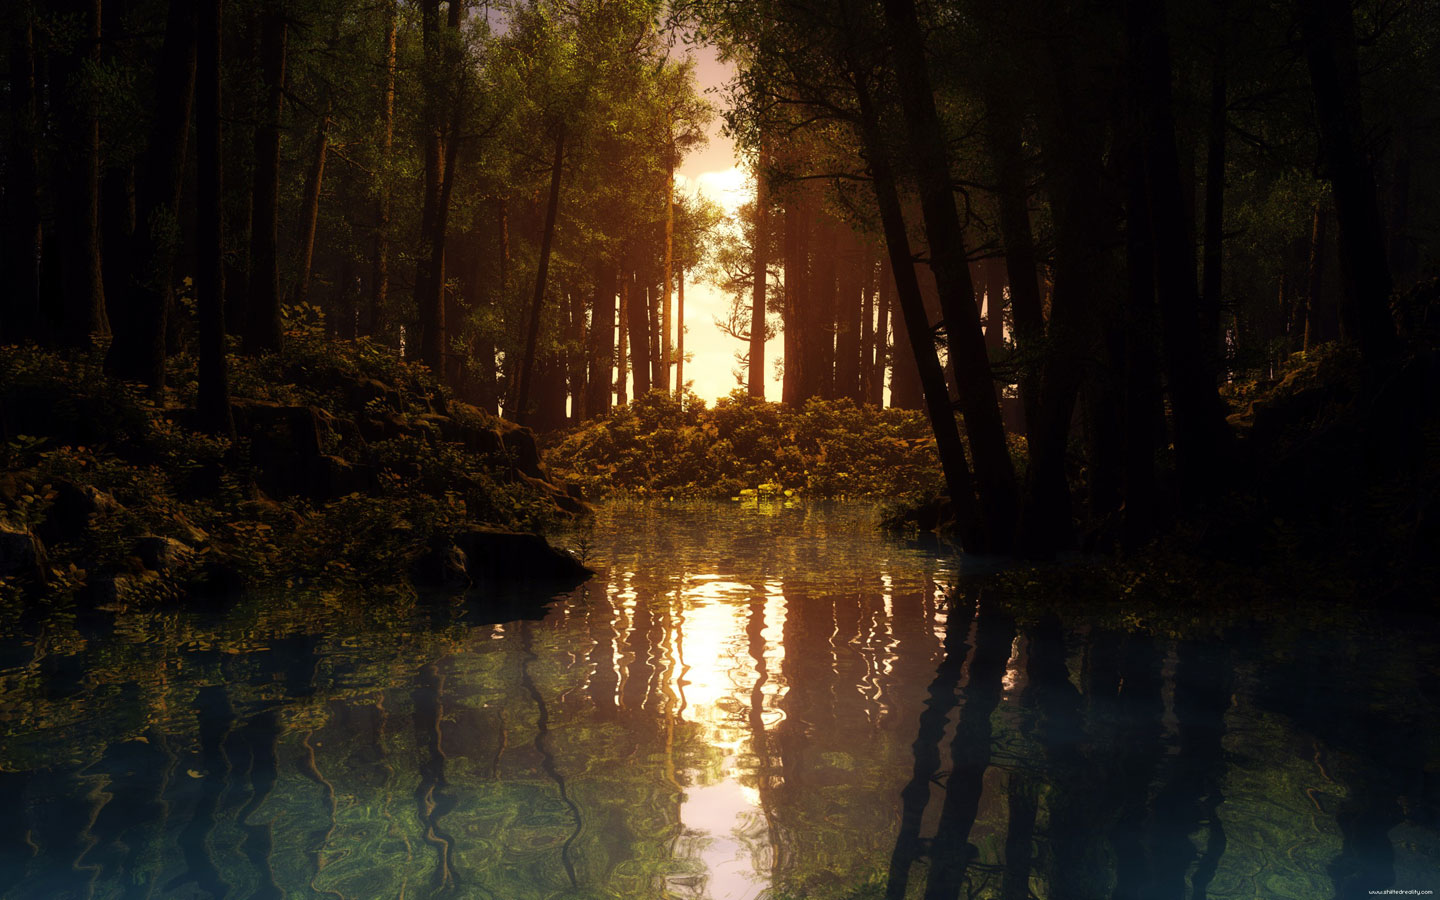 دانلود تصویر باکیفیت انعکاس درختان در آب برکه